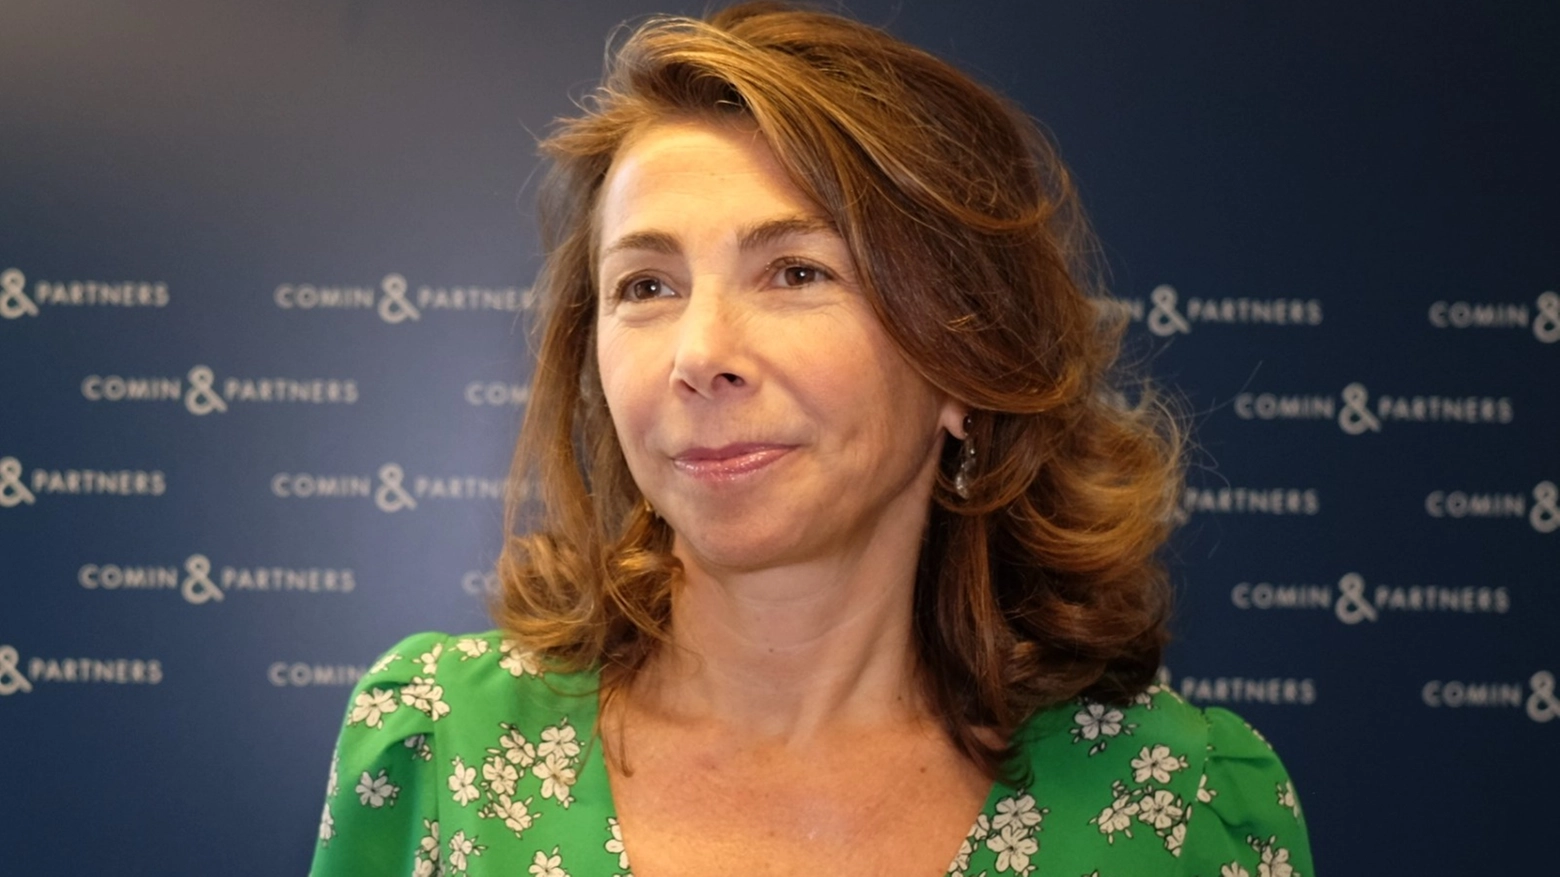 Elena Di Giovanni, vice-presidente di Comin & Partners